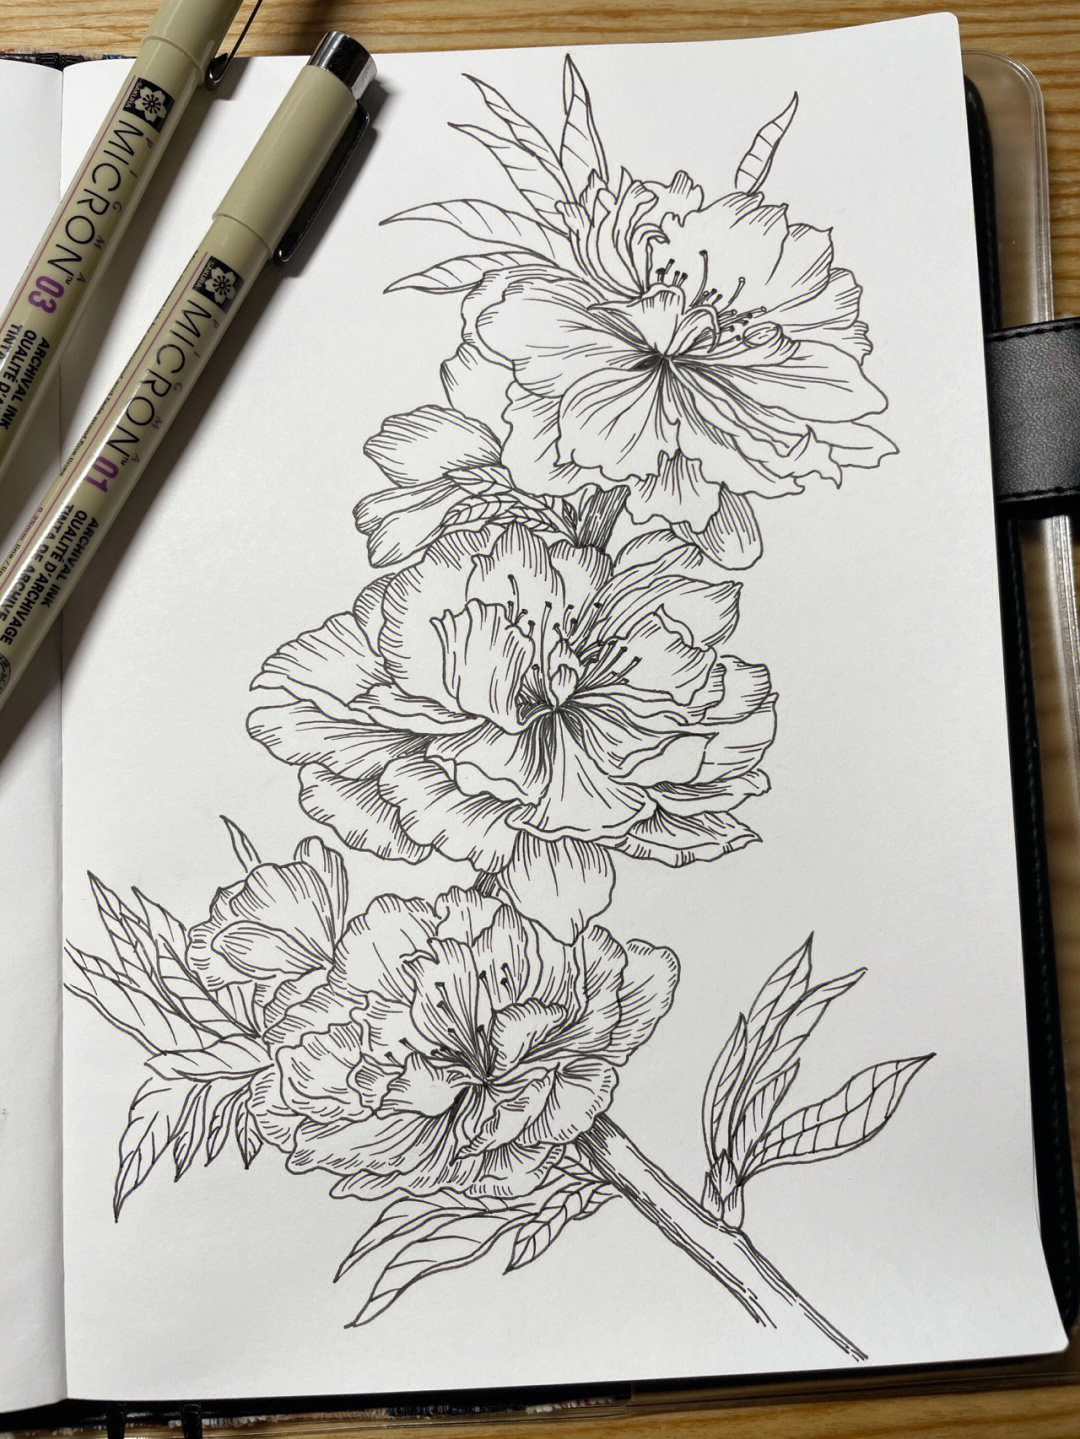 针管笔手绘花卉临摹碧桃附过程